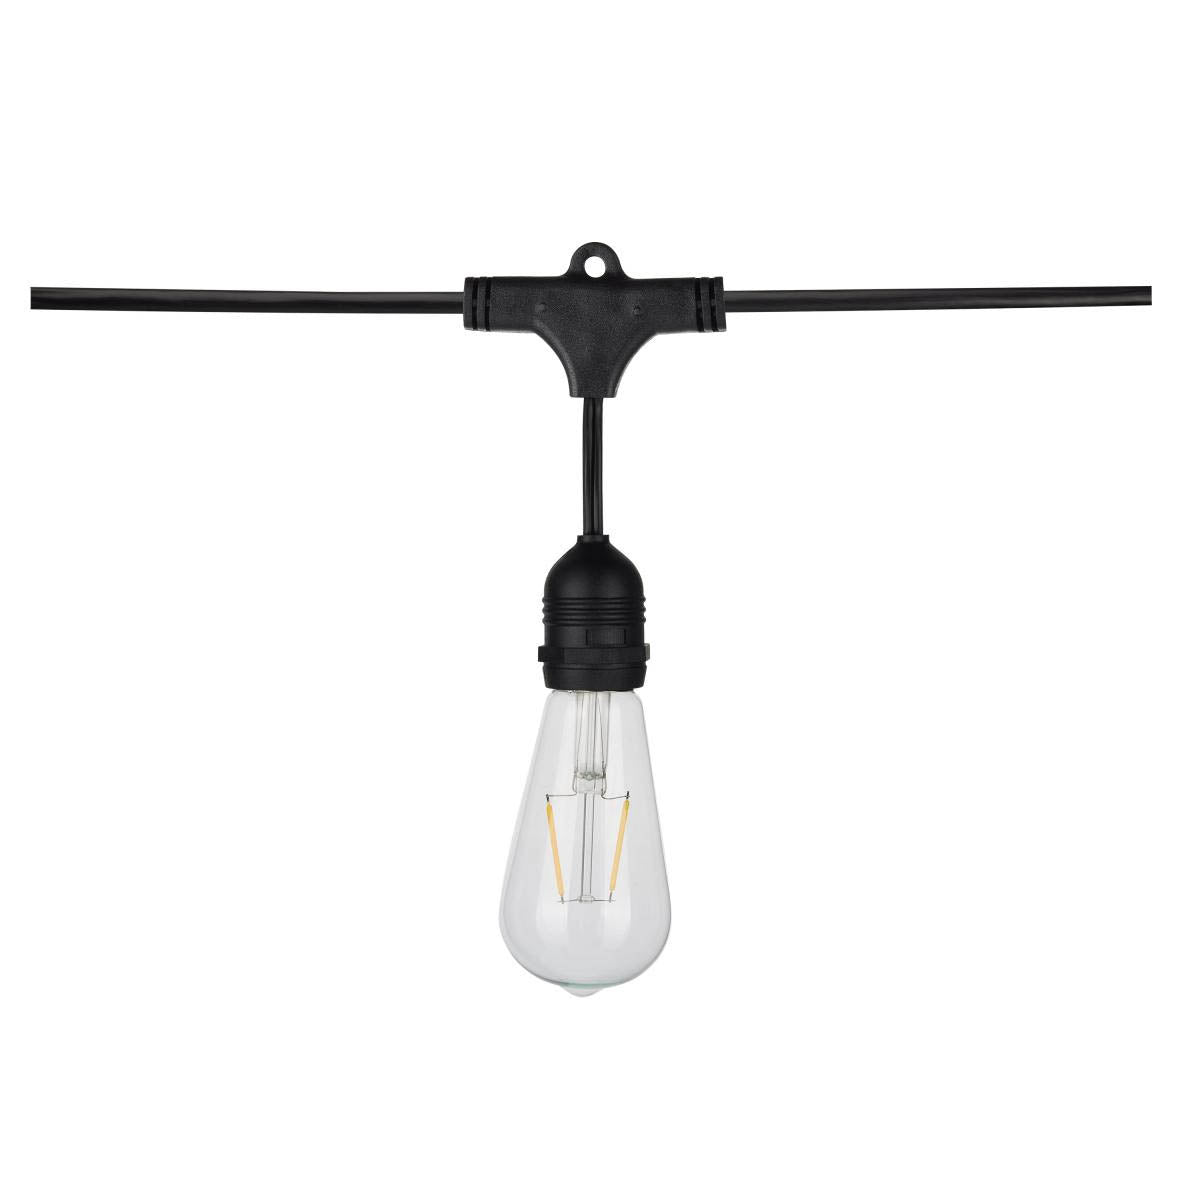 24 Feet LED String Light, 12 ST19 bulbs, Warm White 2200K, 120V, Indoor/Outdoor